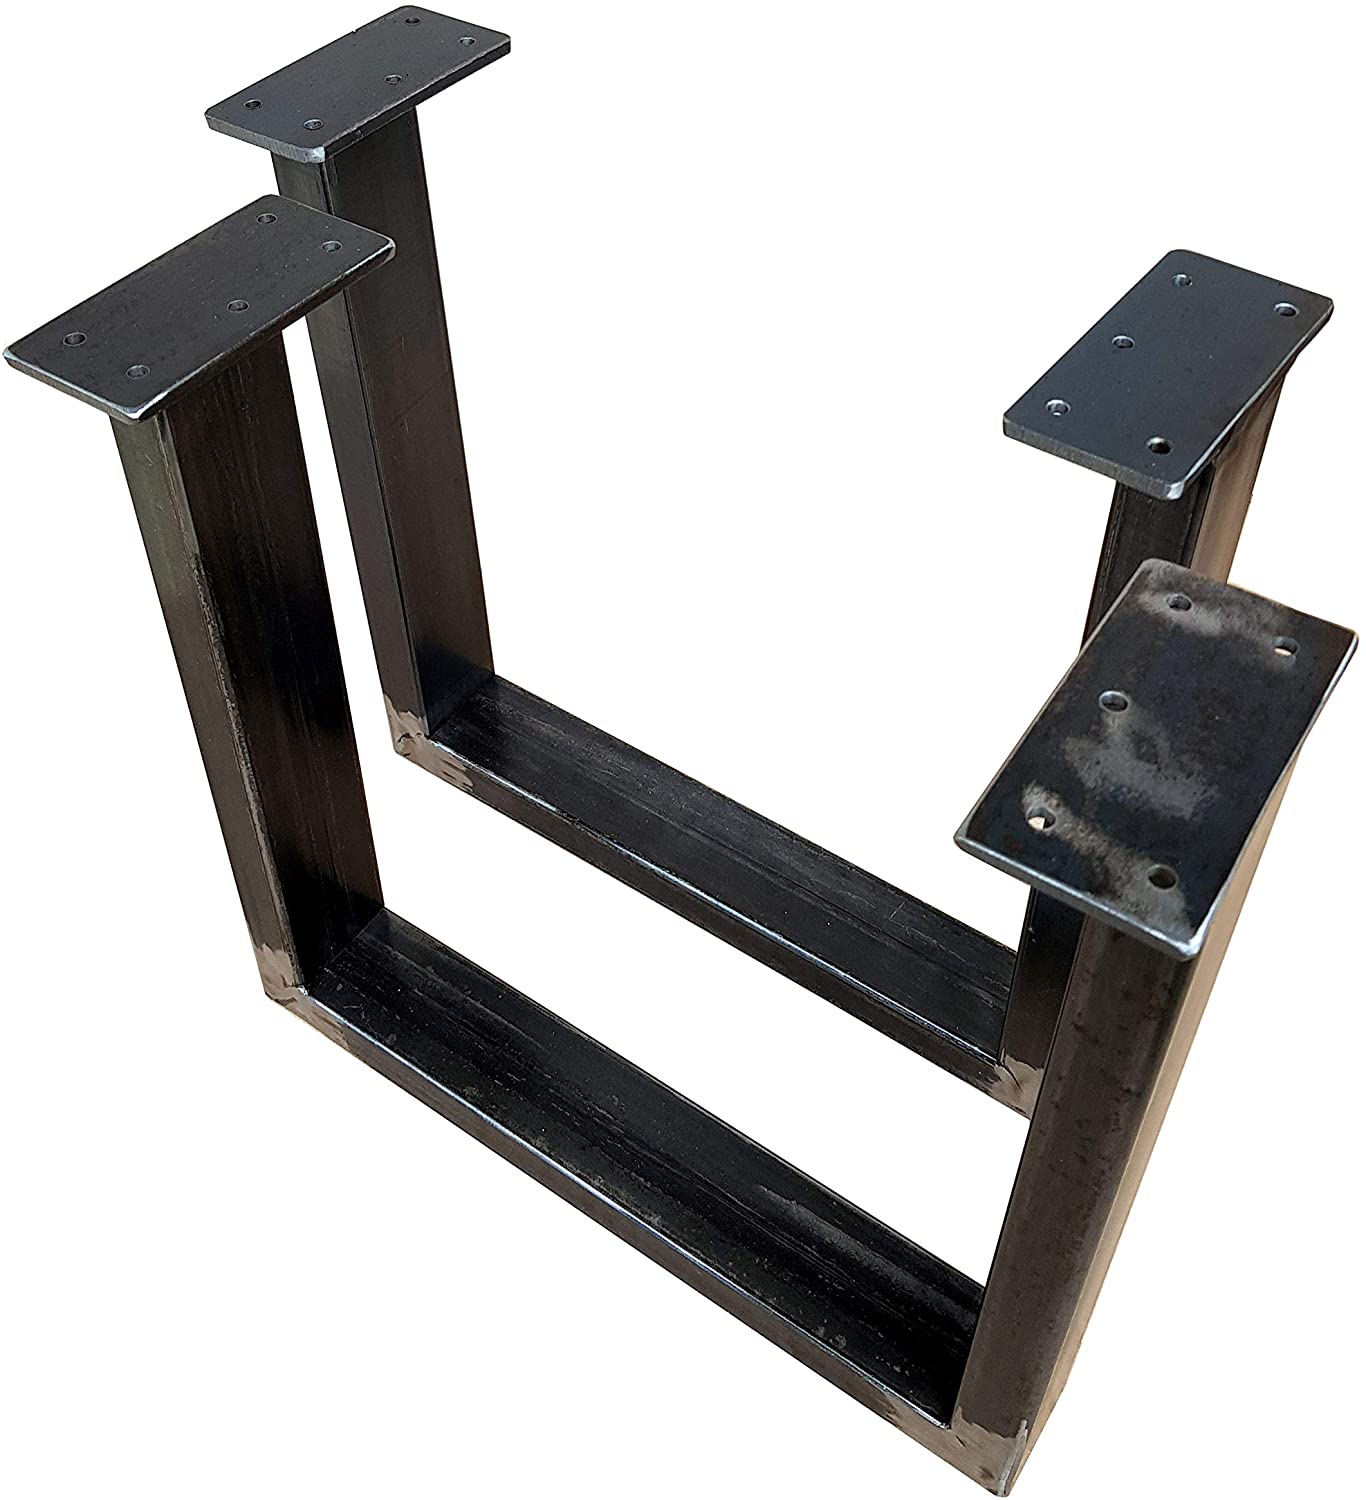 CHYRKA® Tischkufe SWIRZ MTS 1 Paar (2 Stück) Kufengestell Tischbeine Tischgestell 60x30 Rahmentisch Tischuntergestell